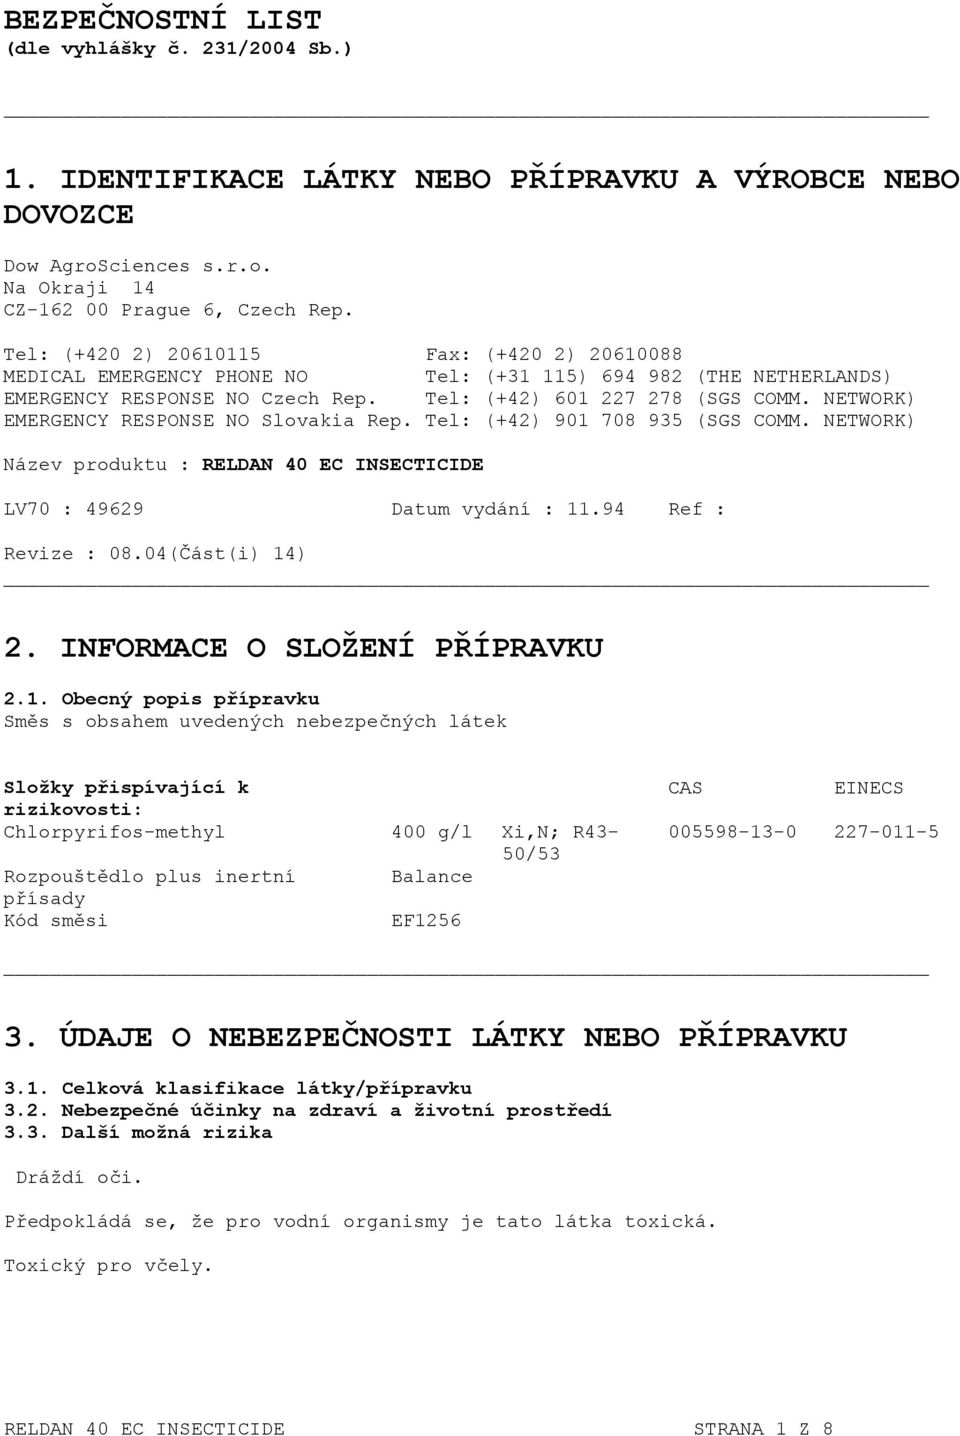 NETWORK) EMERGENCY RESPONSE NO Slovakia Rep. Tel: (+42) 901 708 935 (SGS COMM. NETWORK) Název produktu : RELDAN 40 EC INSECTICIDE LV70 : 49629 Datum vydání : 11.94 Ref : Revize : 08.04(Část(i) 14) 2.